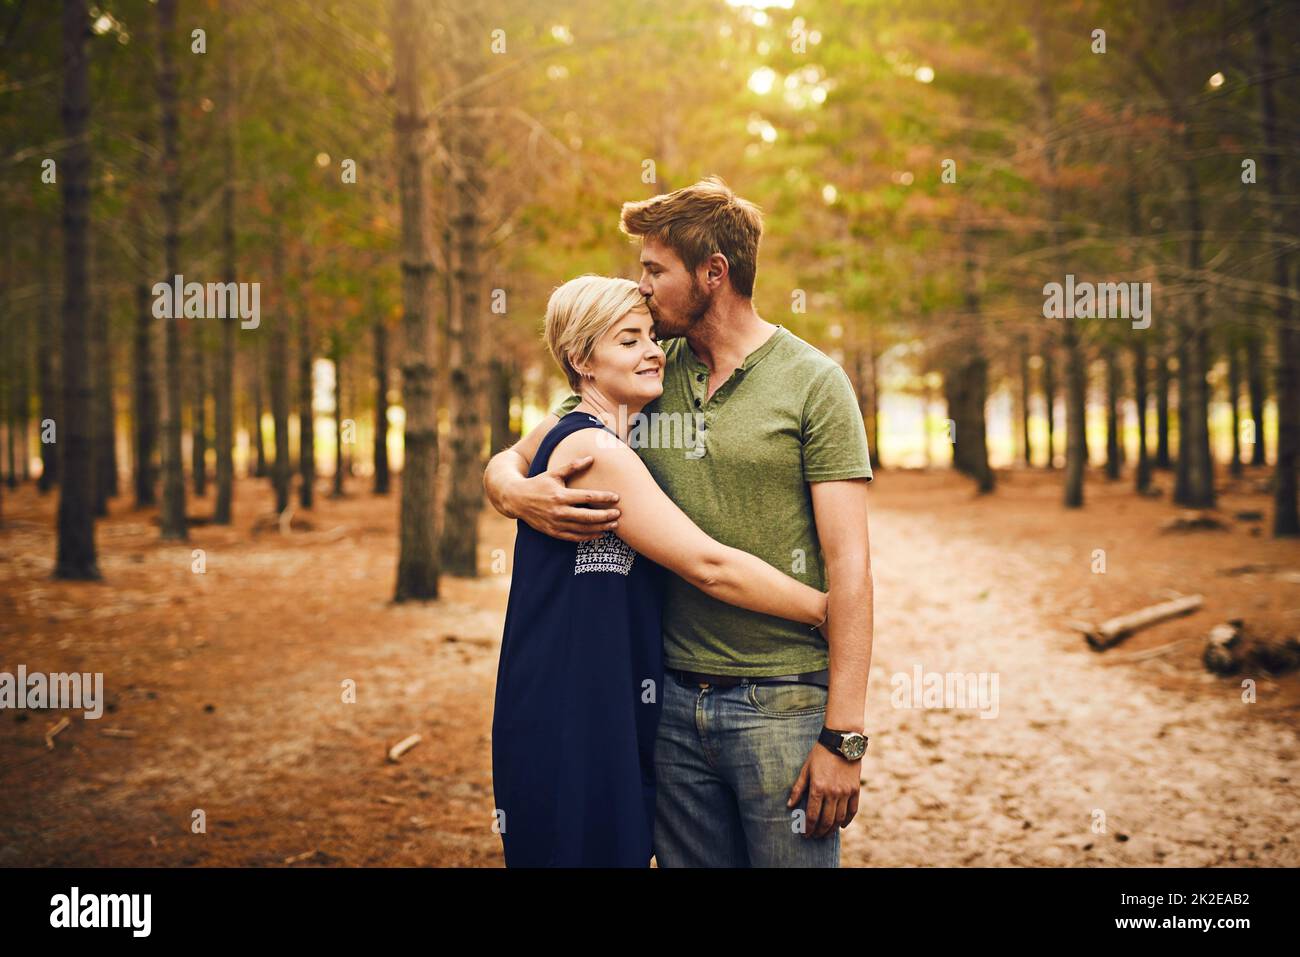 Nous sommes bénis d'être ensemble. Photo d'un couple aimant s'embrassant dans une hug tout en se tenant dehors dans les bois. Banque D'Images